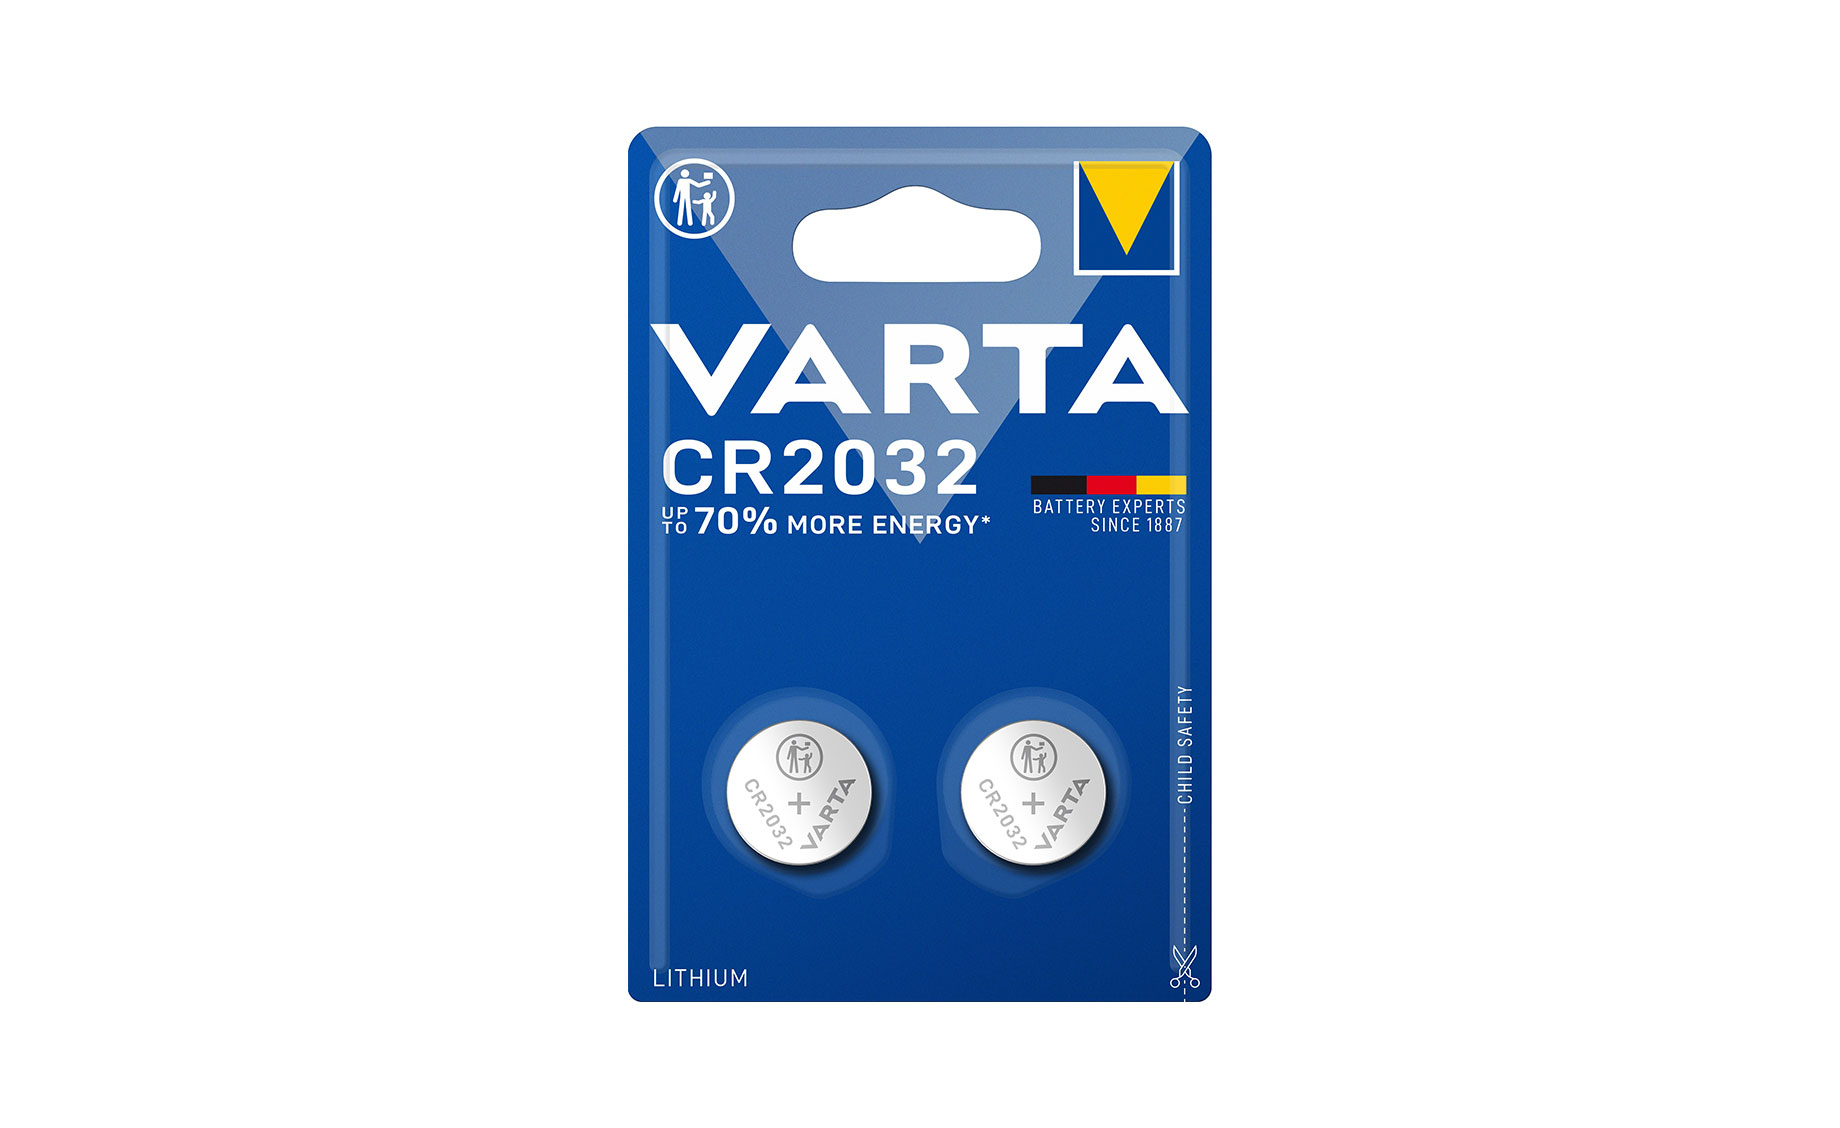 Varta CR2032 Battery, Pack of 2